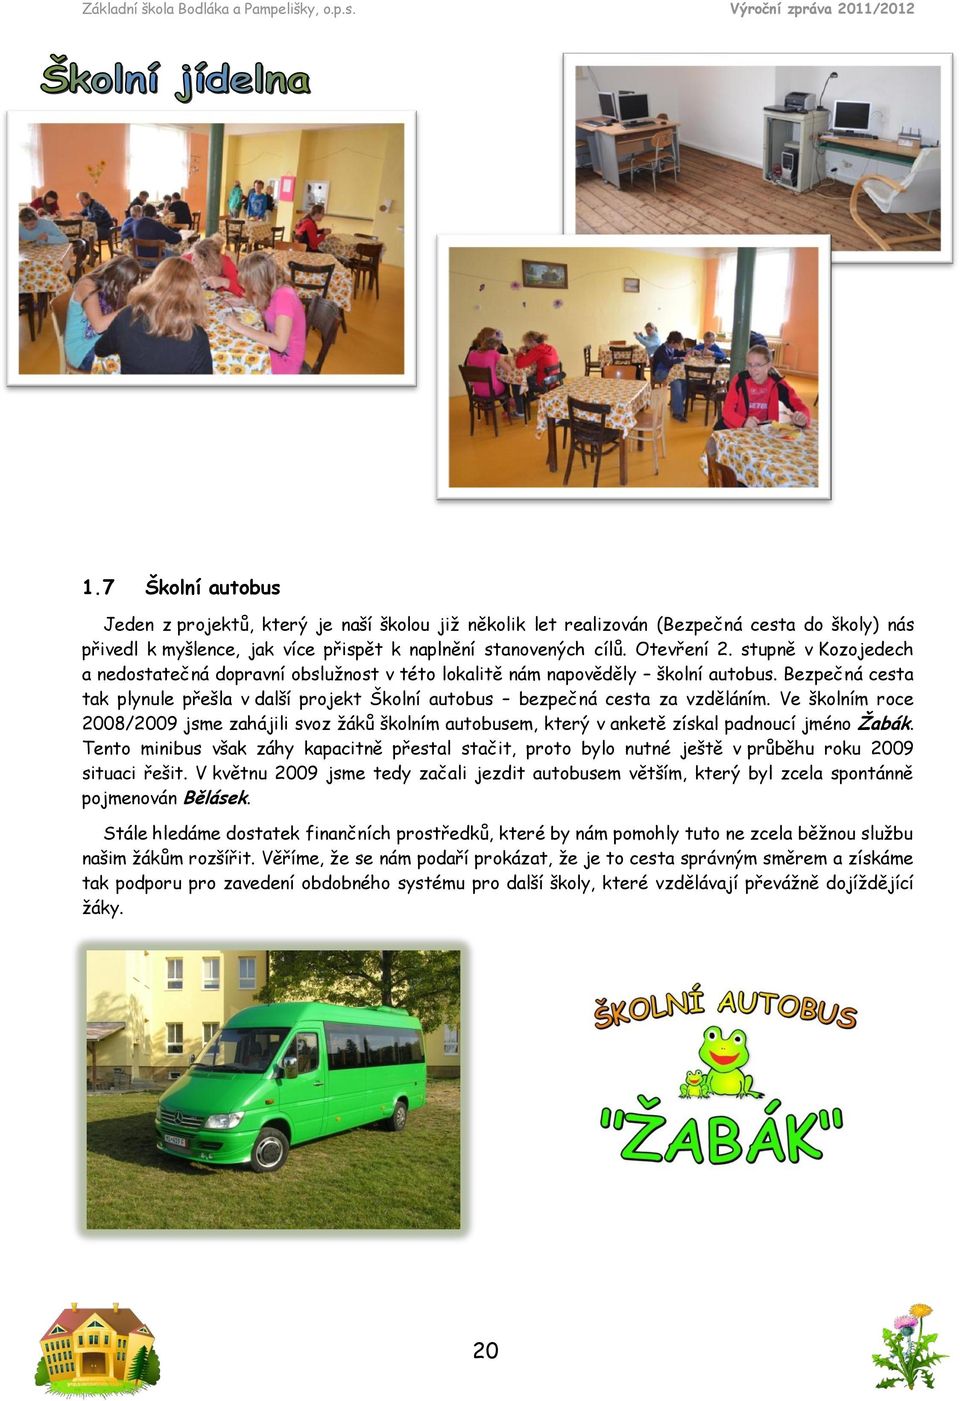 Ve školním roce 28/29 jsme zahájili svoz žáků školním autobusem, který v anketě získal padnoucí jméno Žabák.